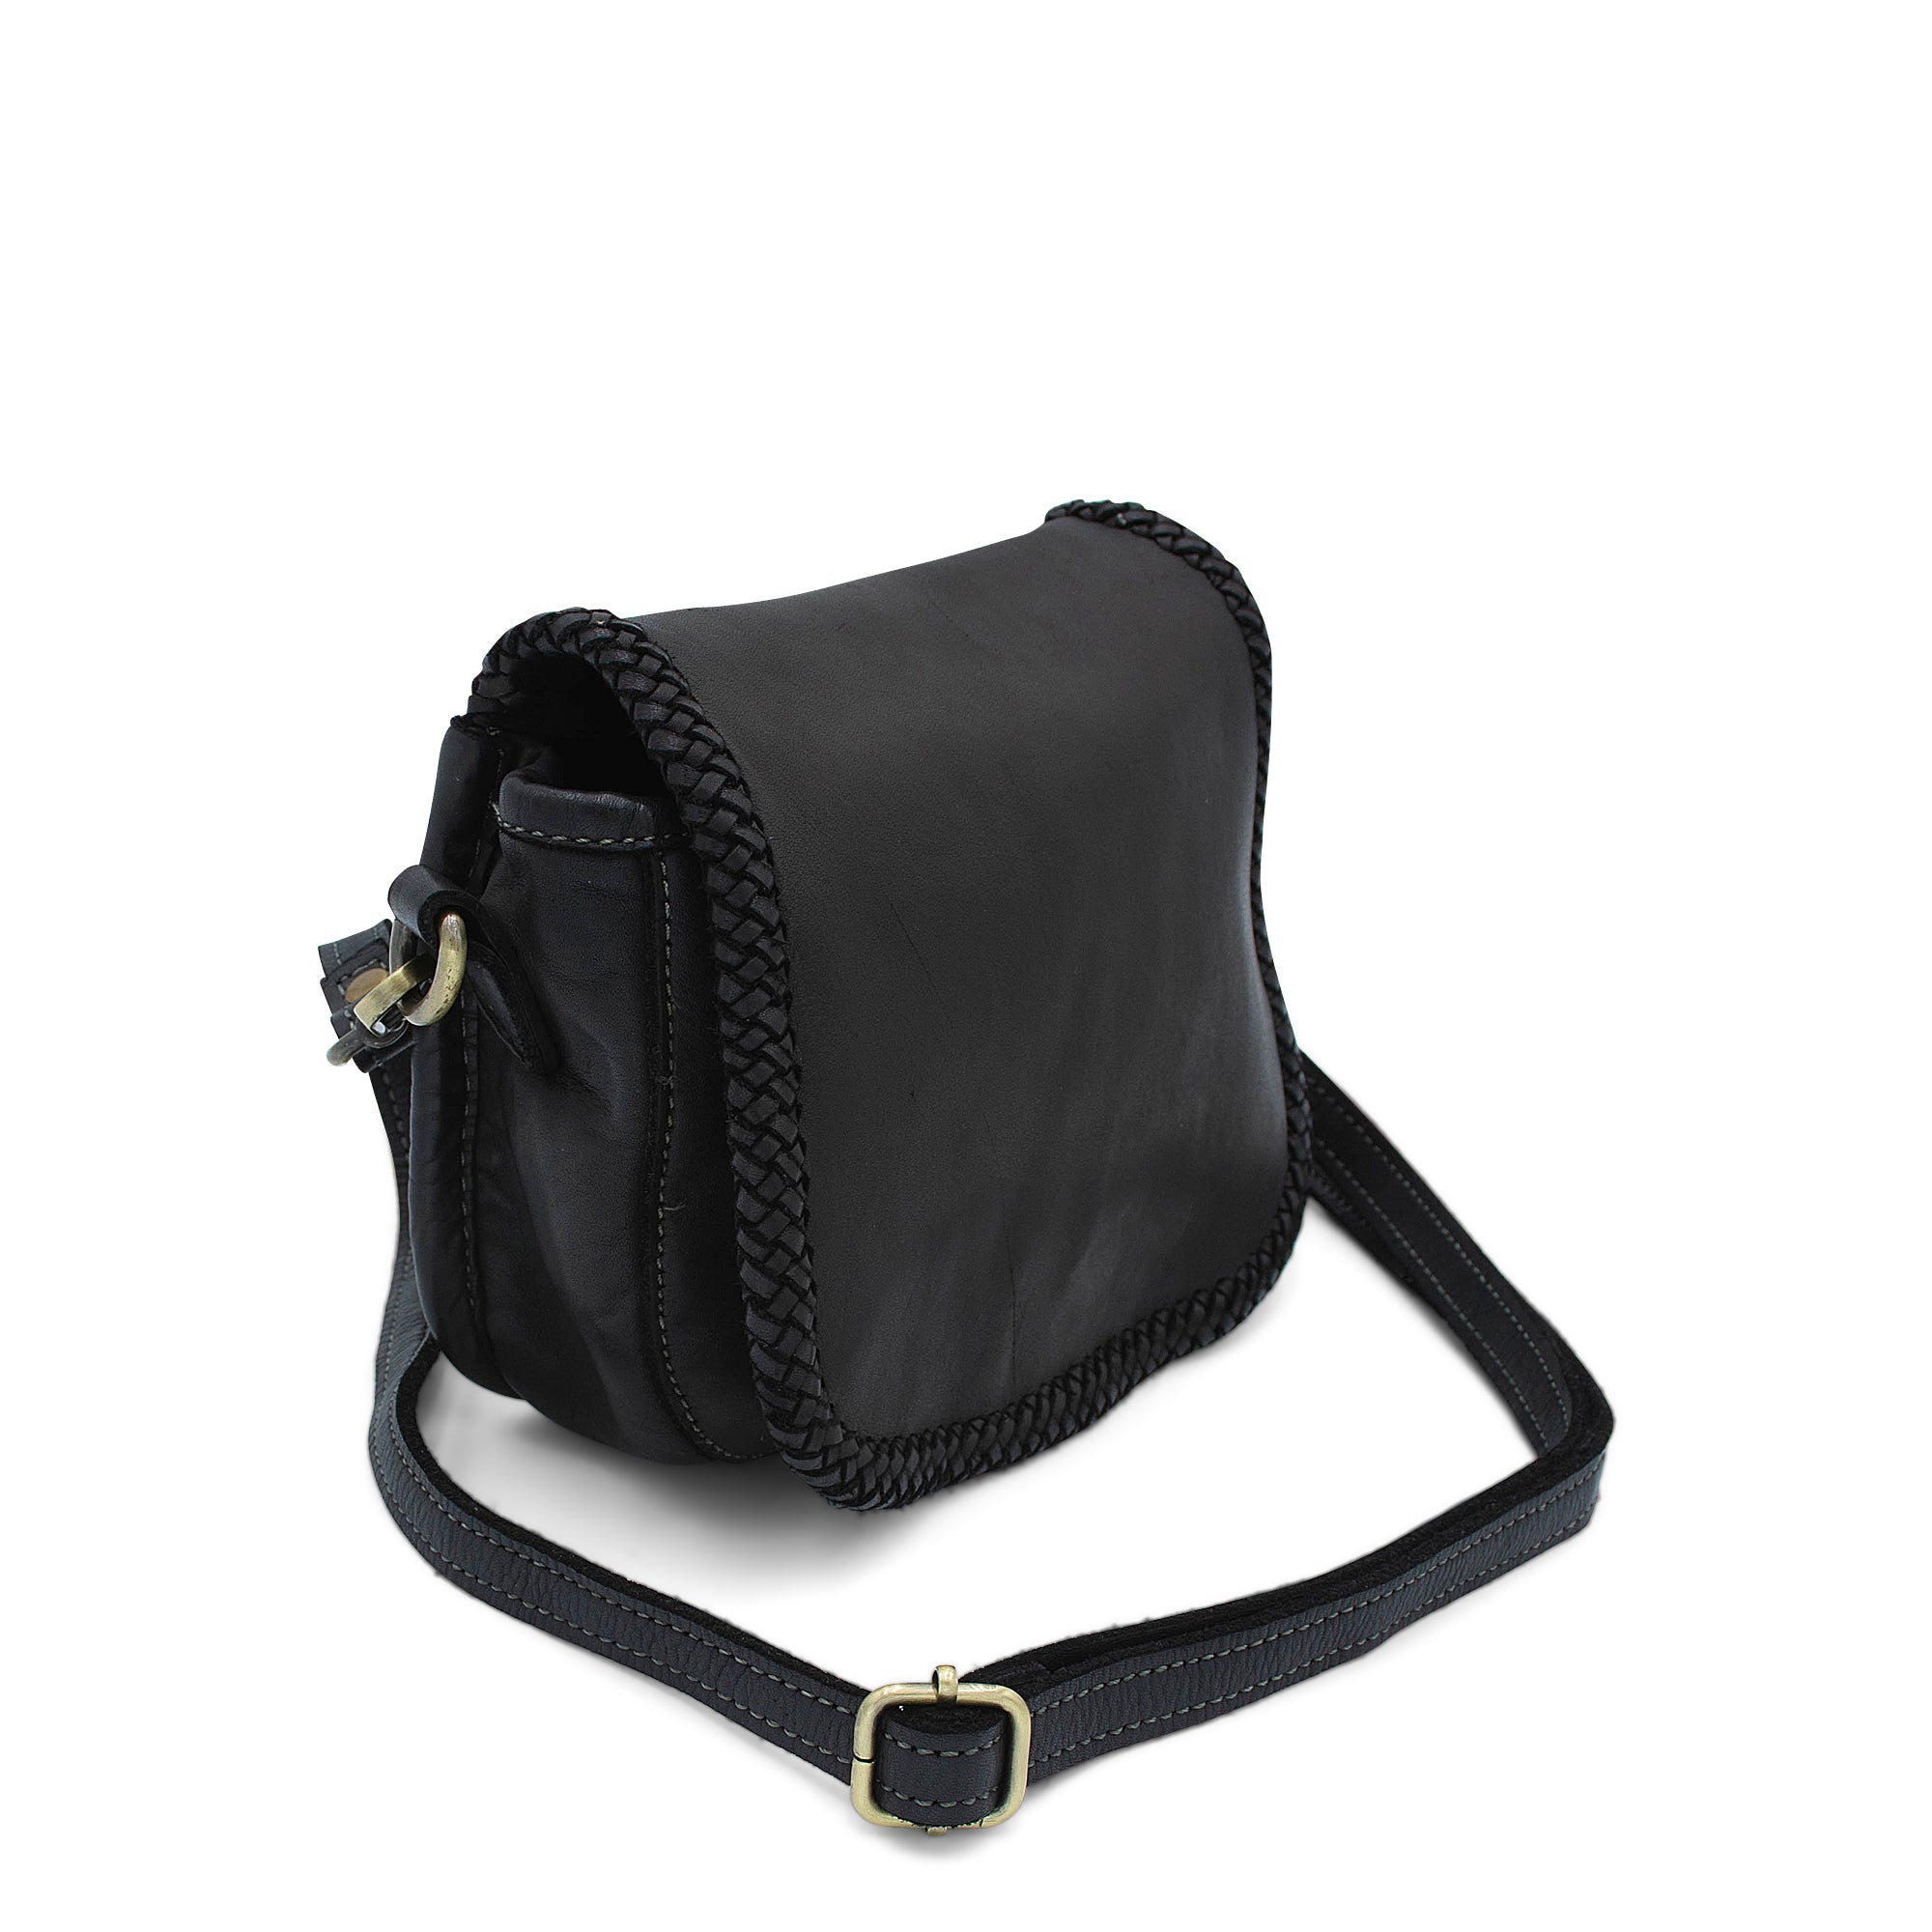 Naples Saddle Bag in Black